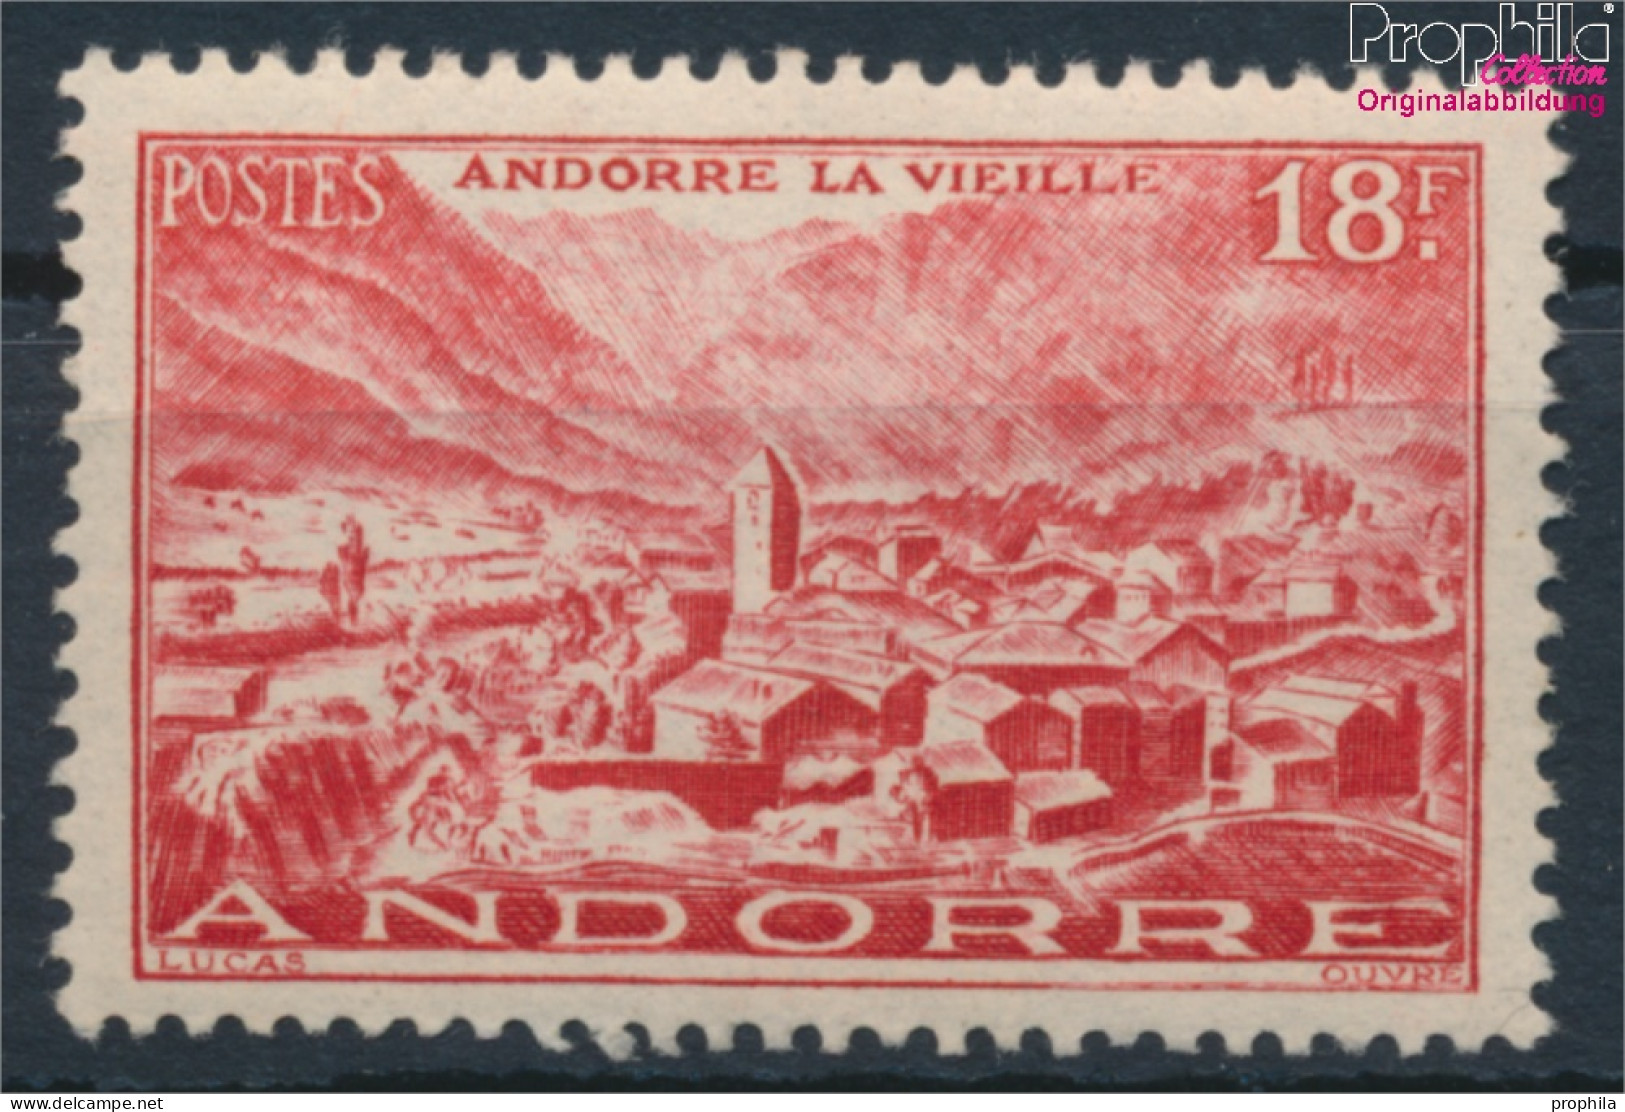 Andorra - Französische Post 133 Postfrisch 1944 Landschaften (10368400 - Ungebraucht